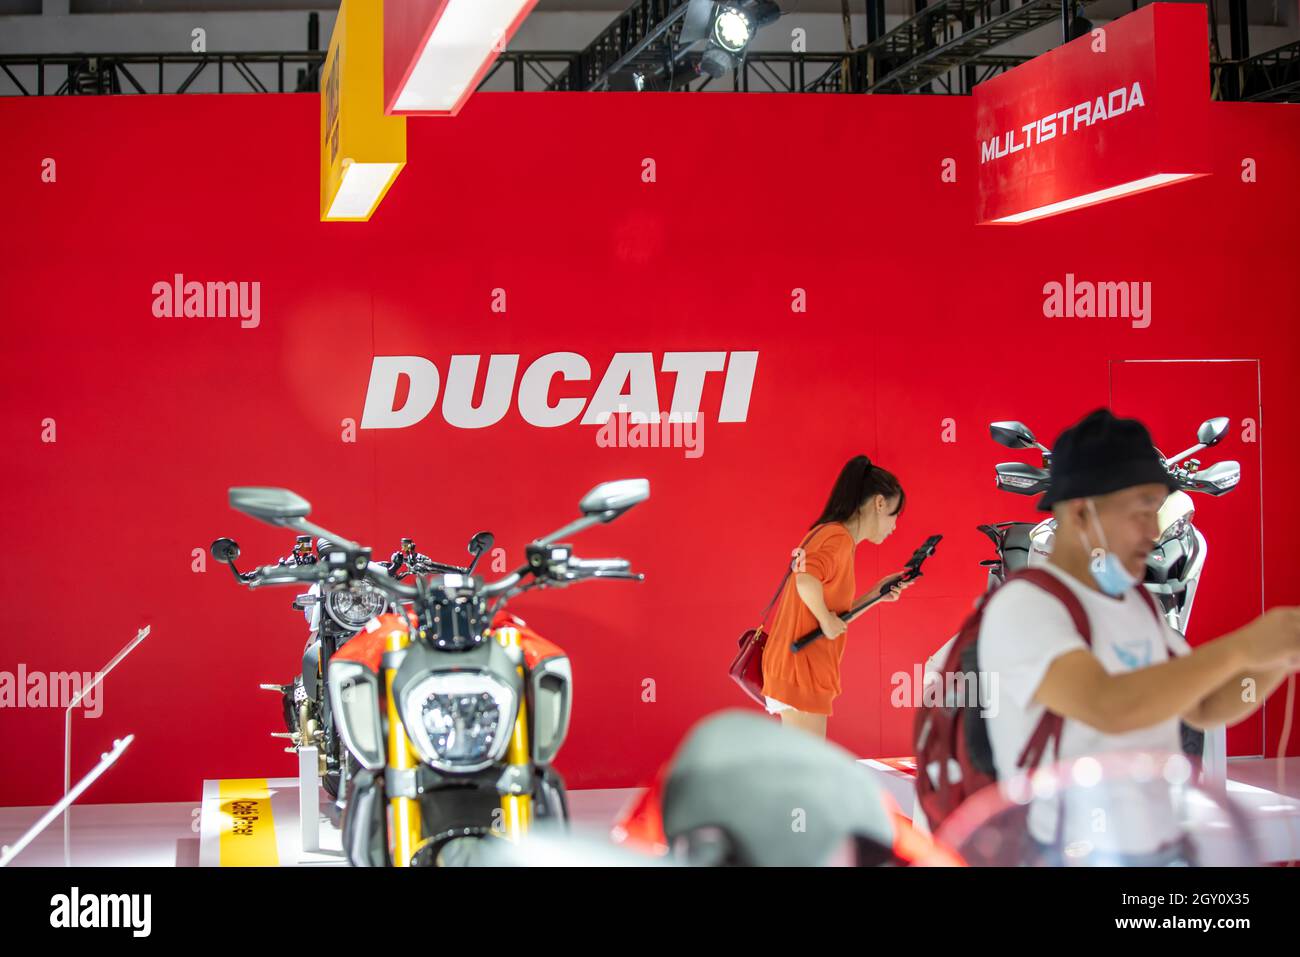 CHONGQING, CHINA - 19. Sep 2020: Ein italienisches Motorradunternehmen Ducati wurde auf der chinesischen Motorrad-expo '18th CIMAMotor' vorgestellt. Stockfoto